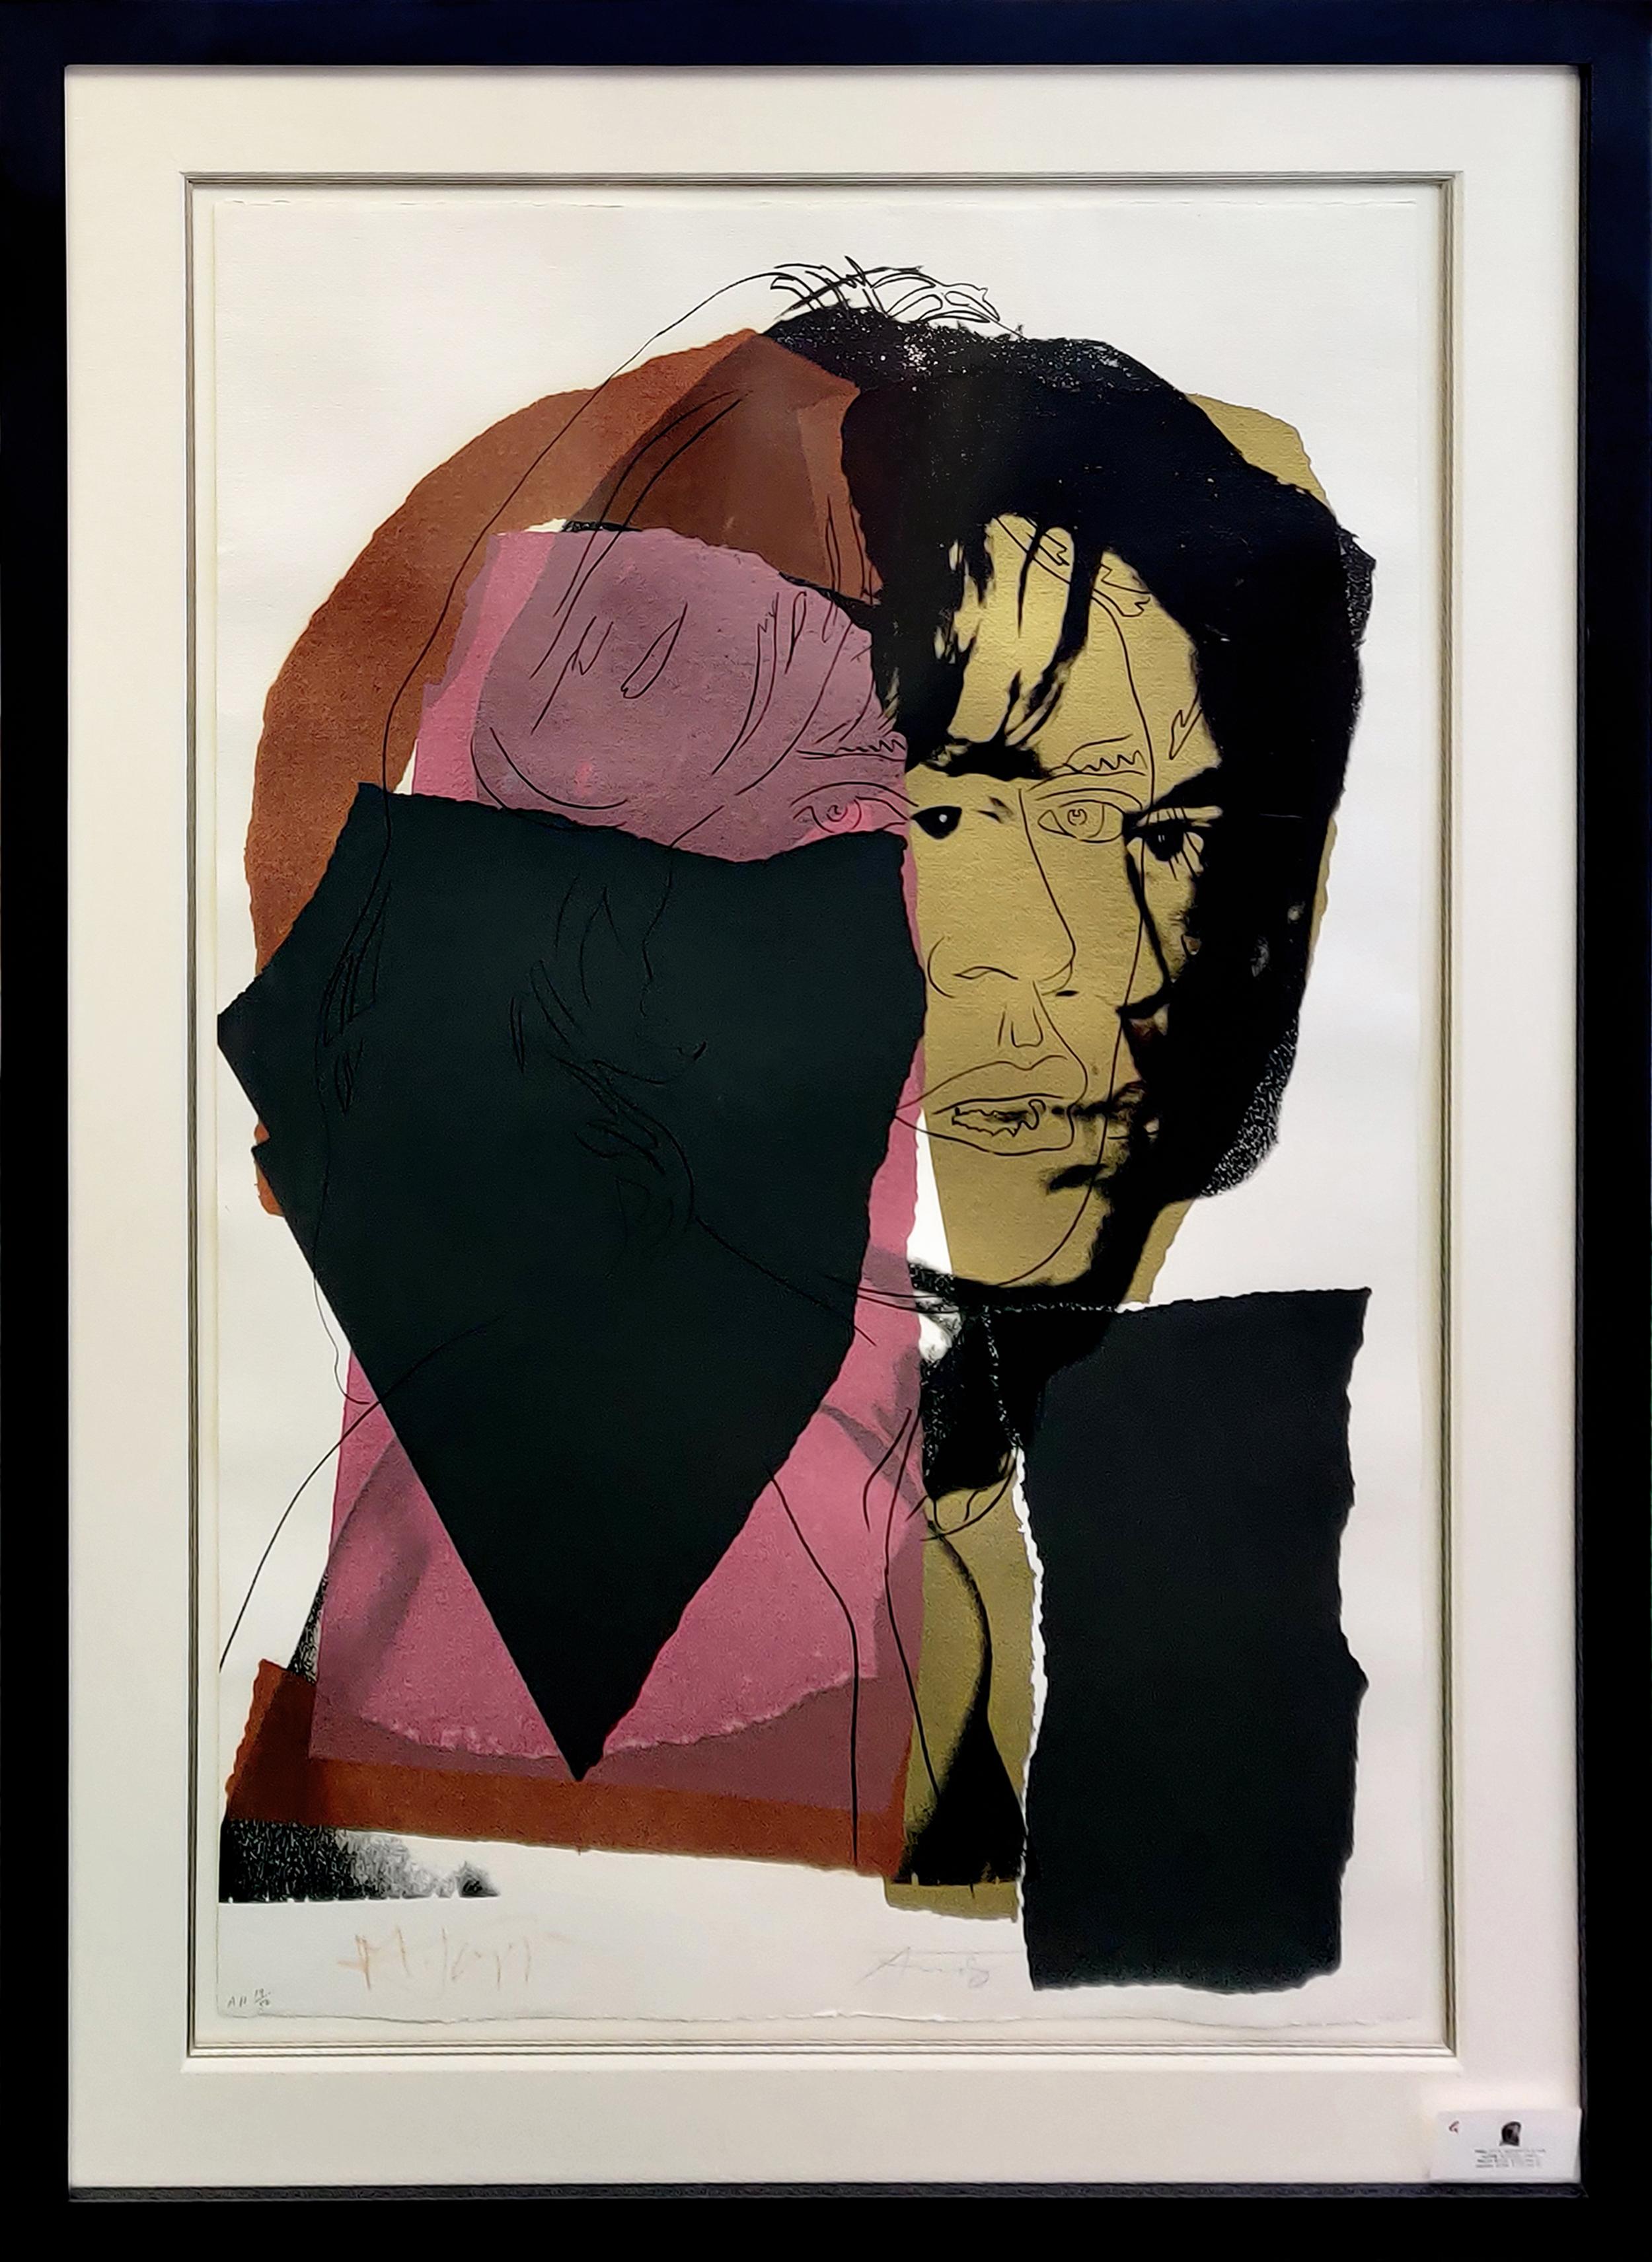 Andy Warhol Portrait Print - MICK JAGGER FS II.139